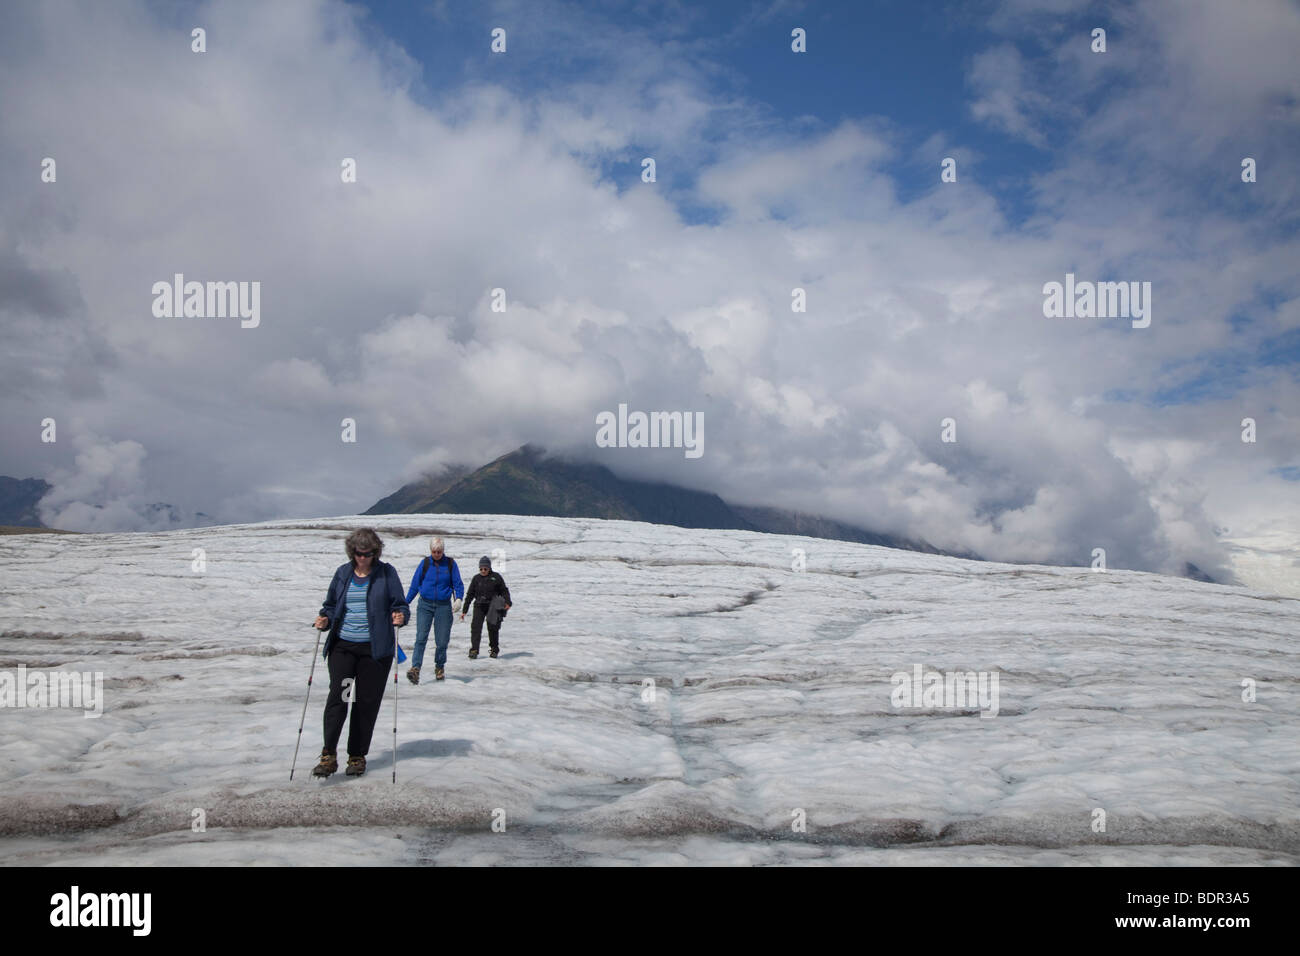 Kennicott, Alaska - Randonneurs sur le glacier en racine Wrangell-St. Elias National Park. Banque D'Images